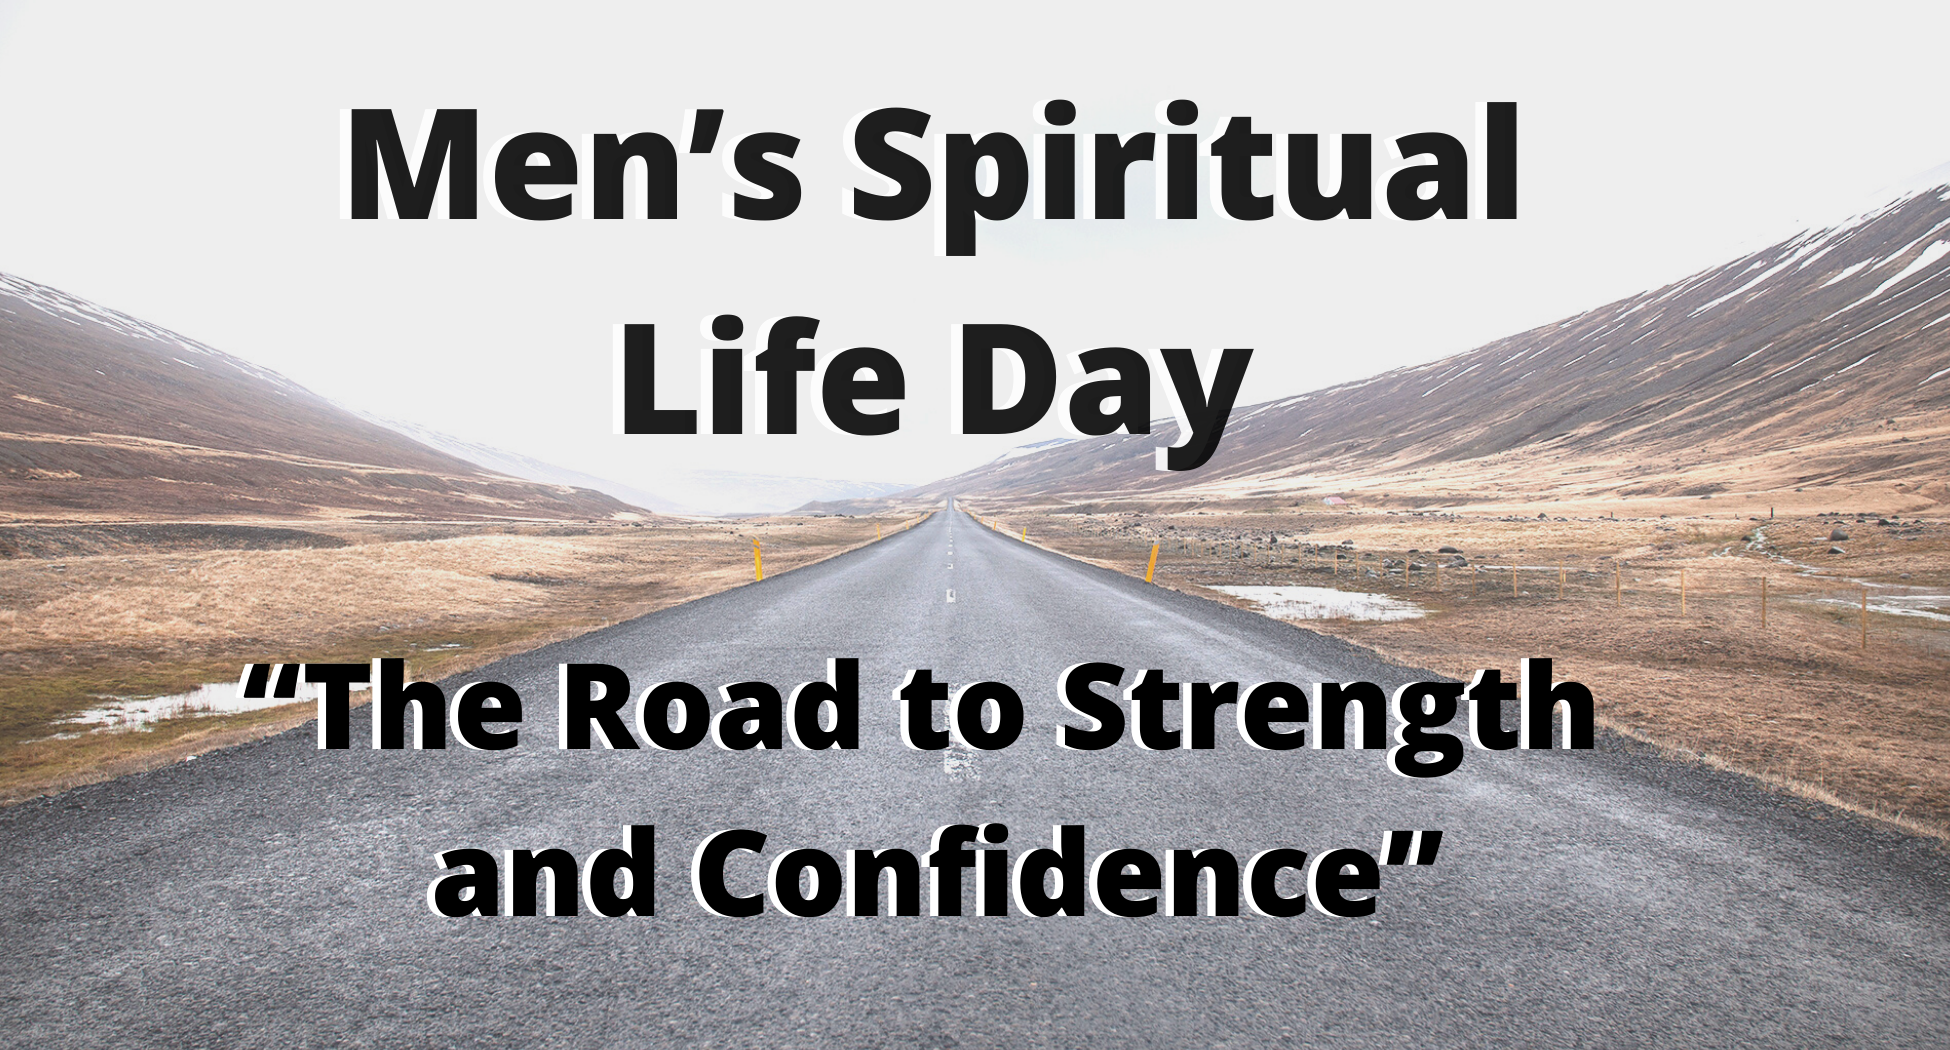 Men's Spiritual Life Day 2020